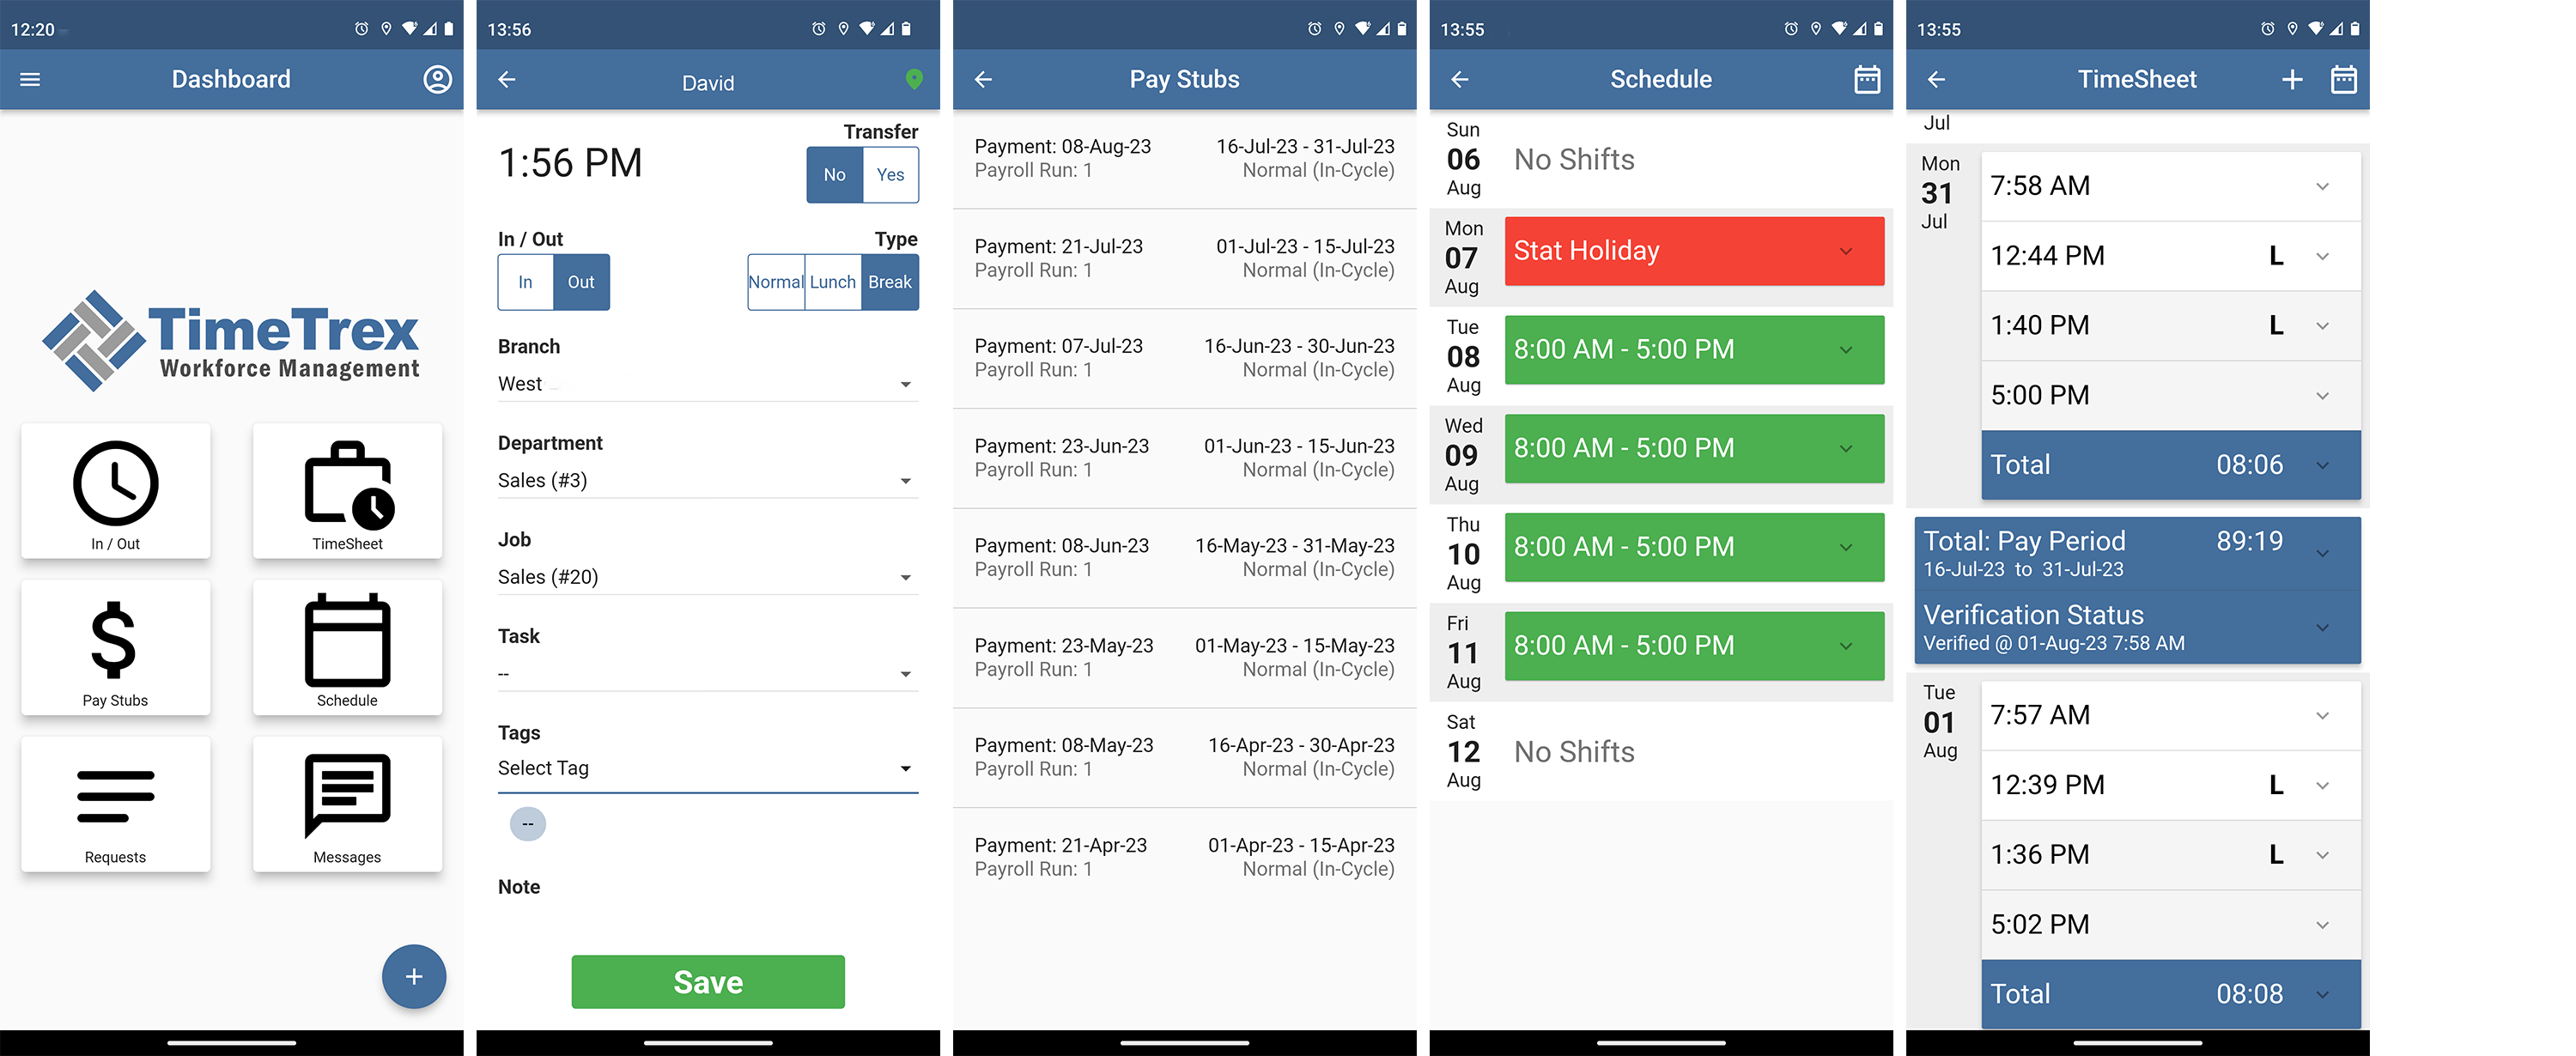 TimeTrex Mobile App Screenshots